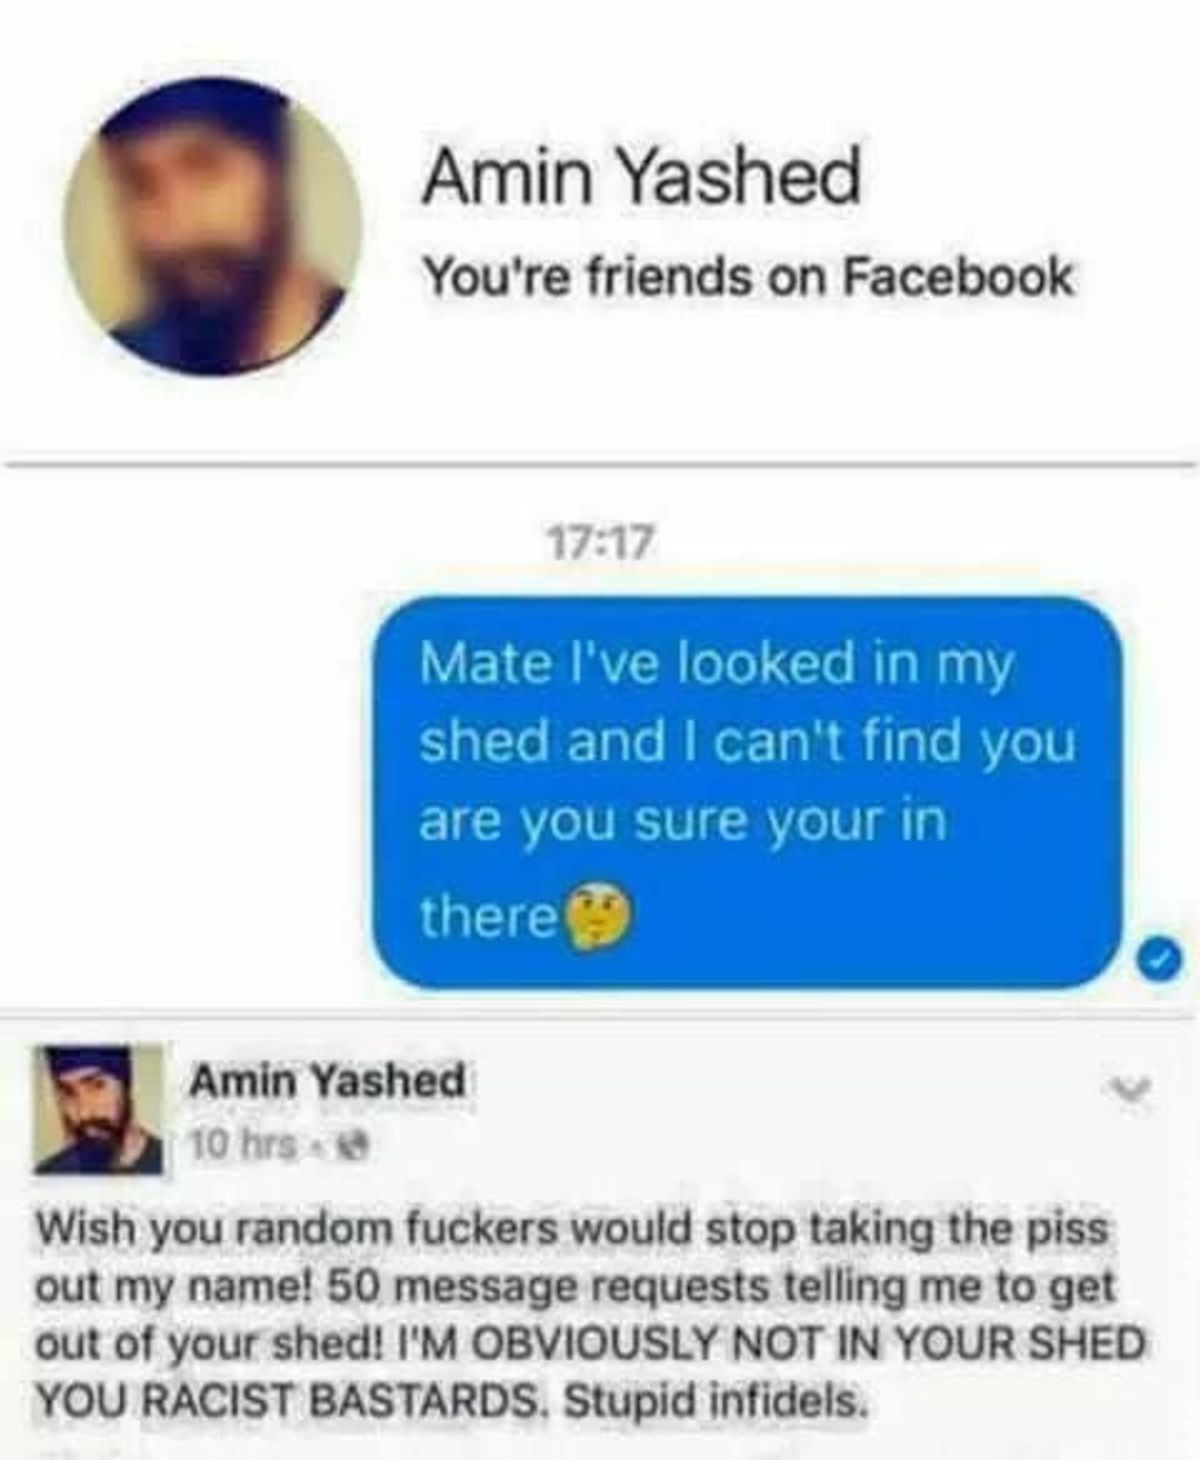 Amin yashed